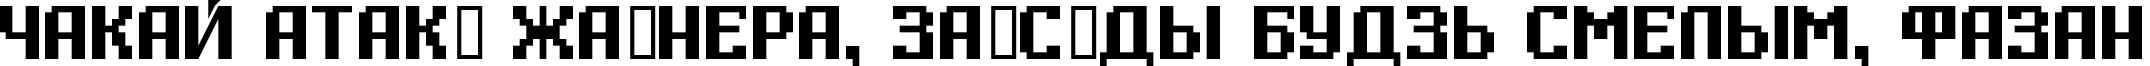 Пример написания шрифтом Digital Thin текста на белорусском